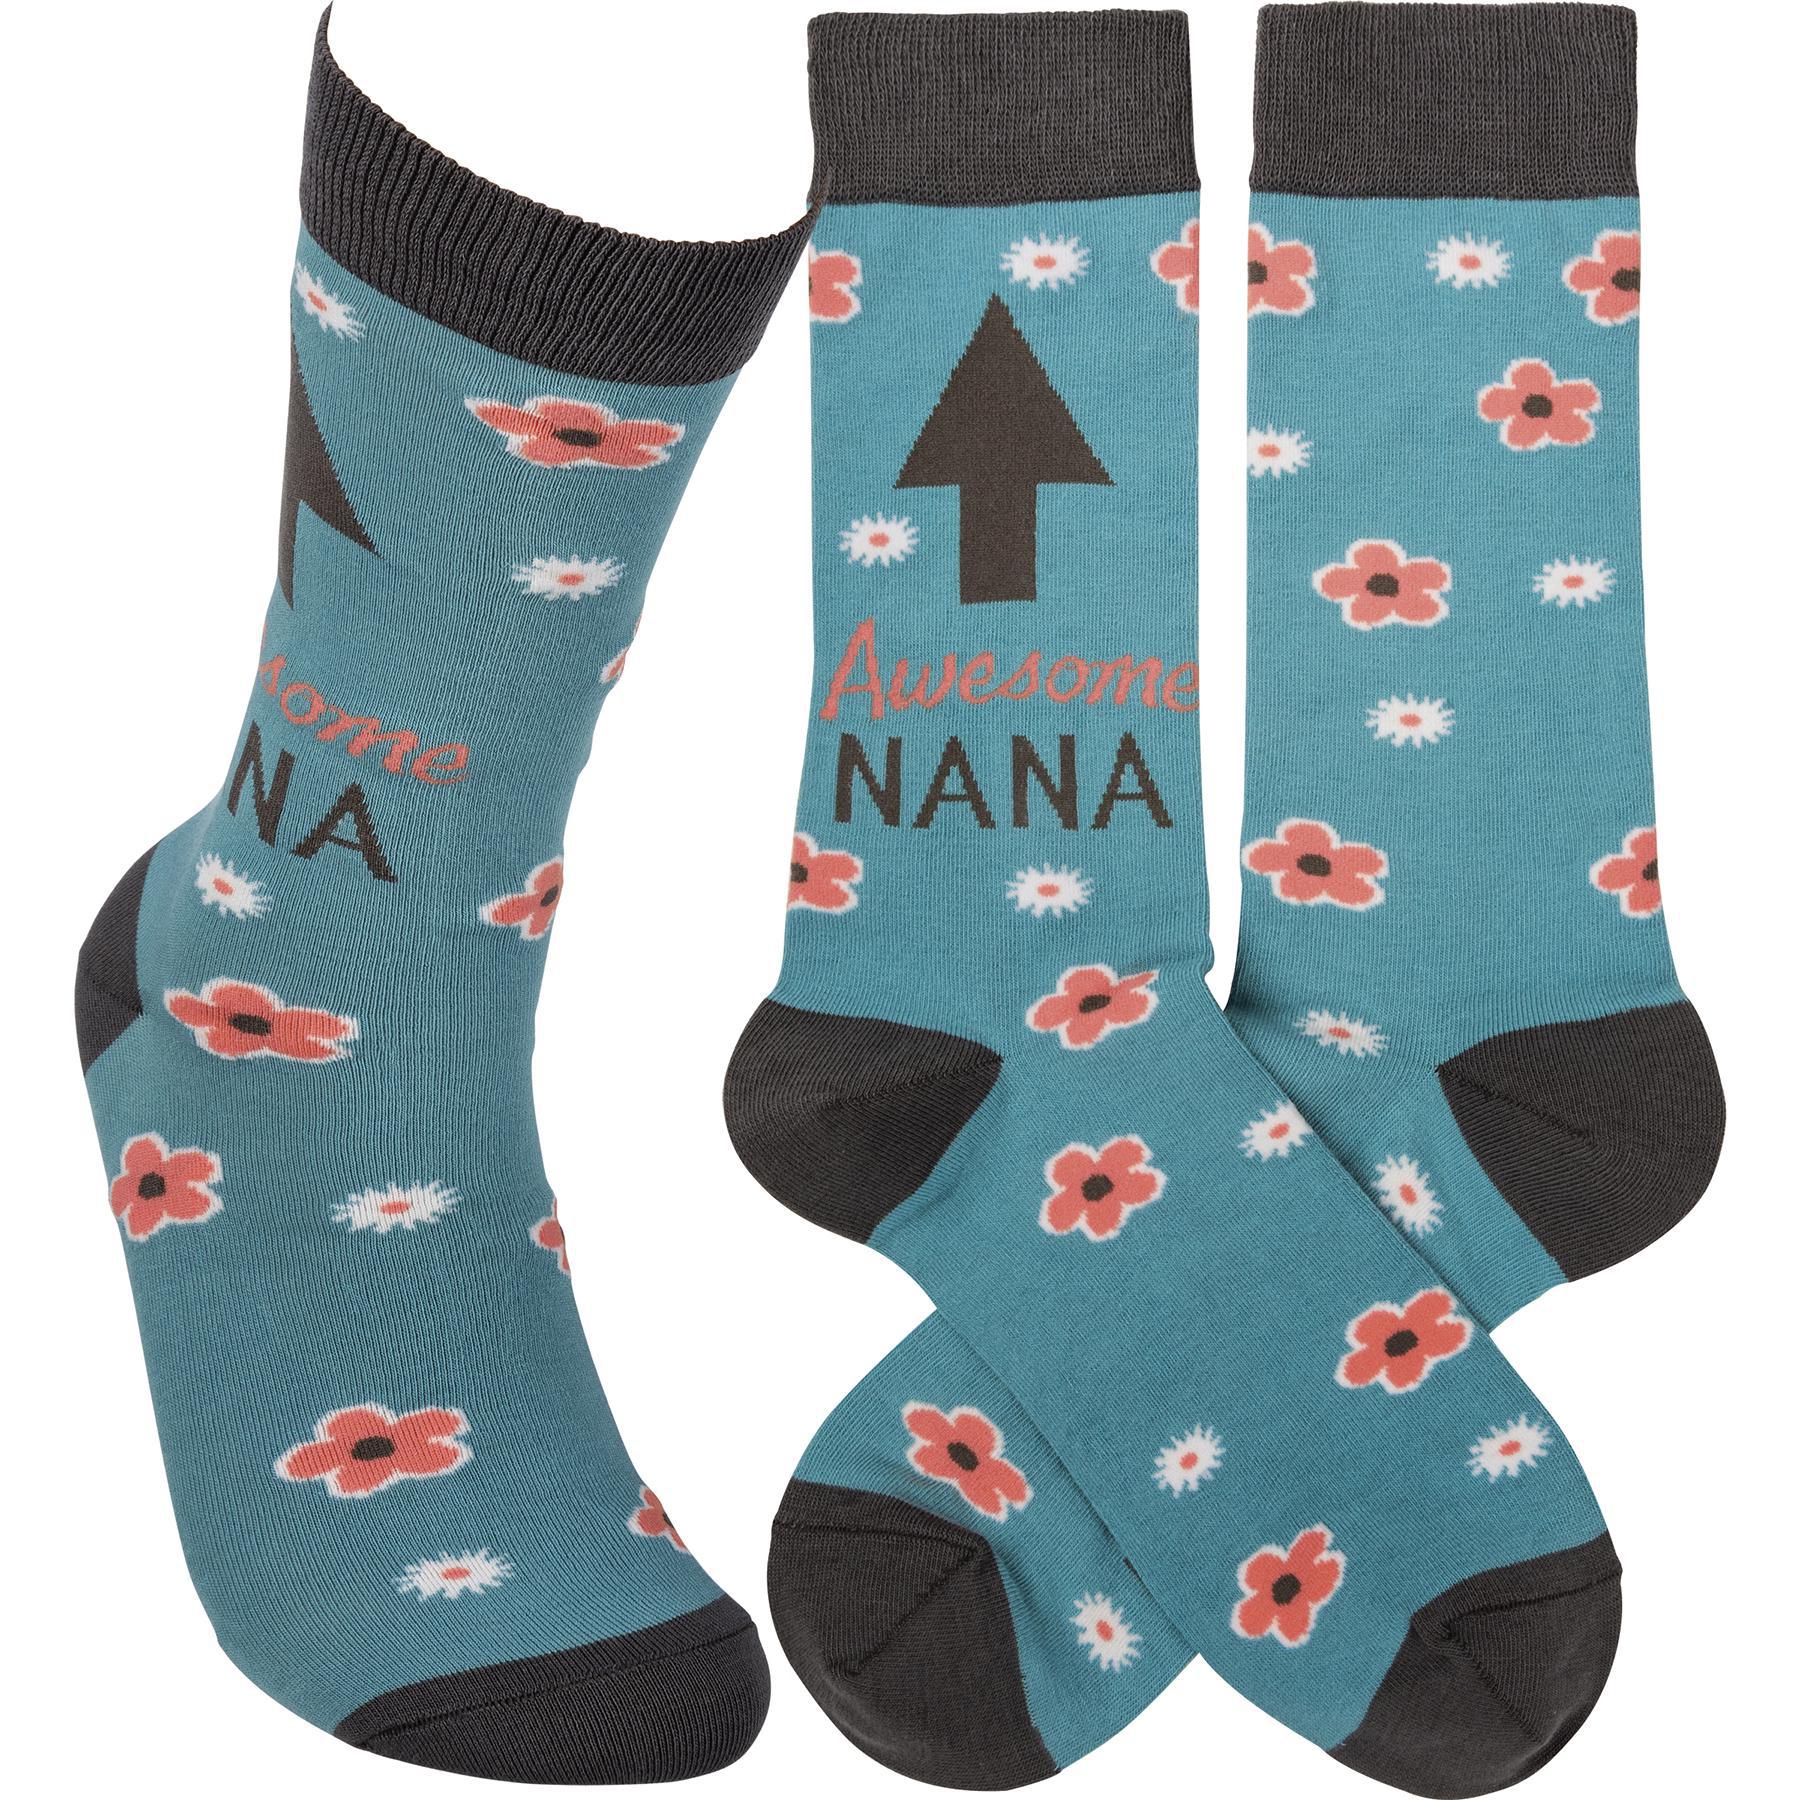 Awesome Nana Socks